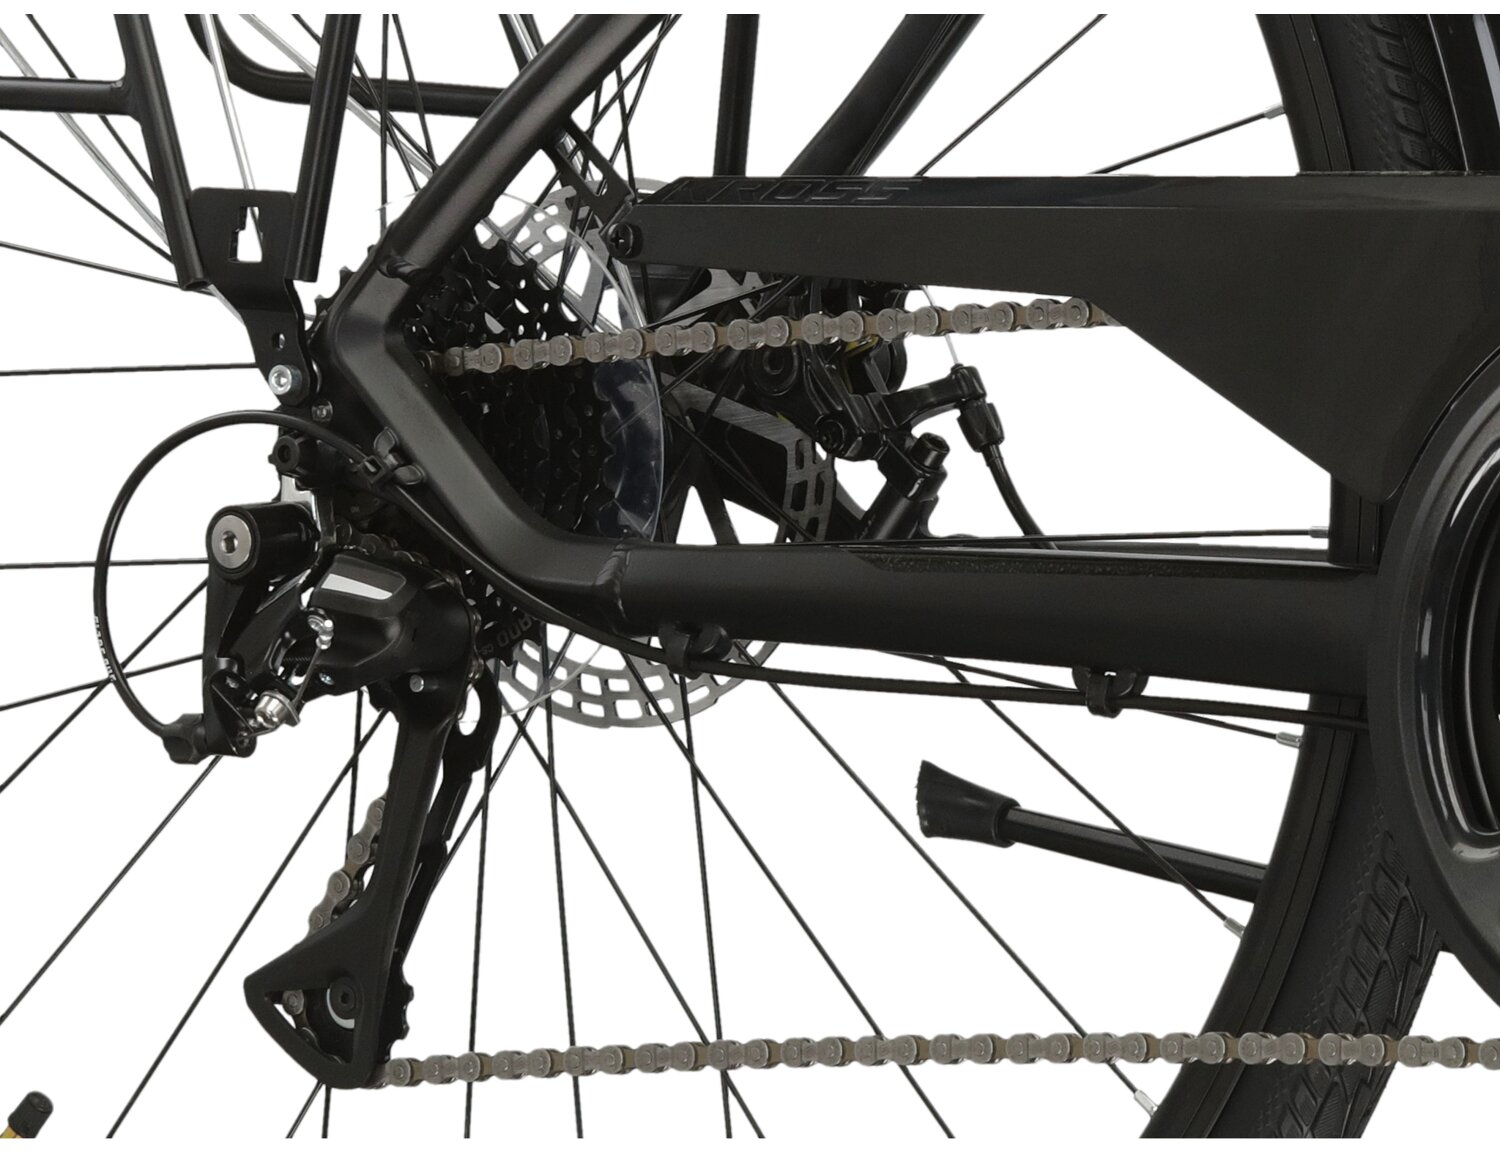  Tylna siedmiobiegowa przerzutka Shimano Acera 3020 oraz mechanicznehamulce tarczowe w rowerze trekkingowym KROSS Trans 3.0 